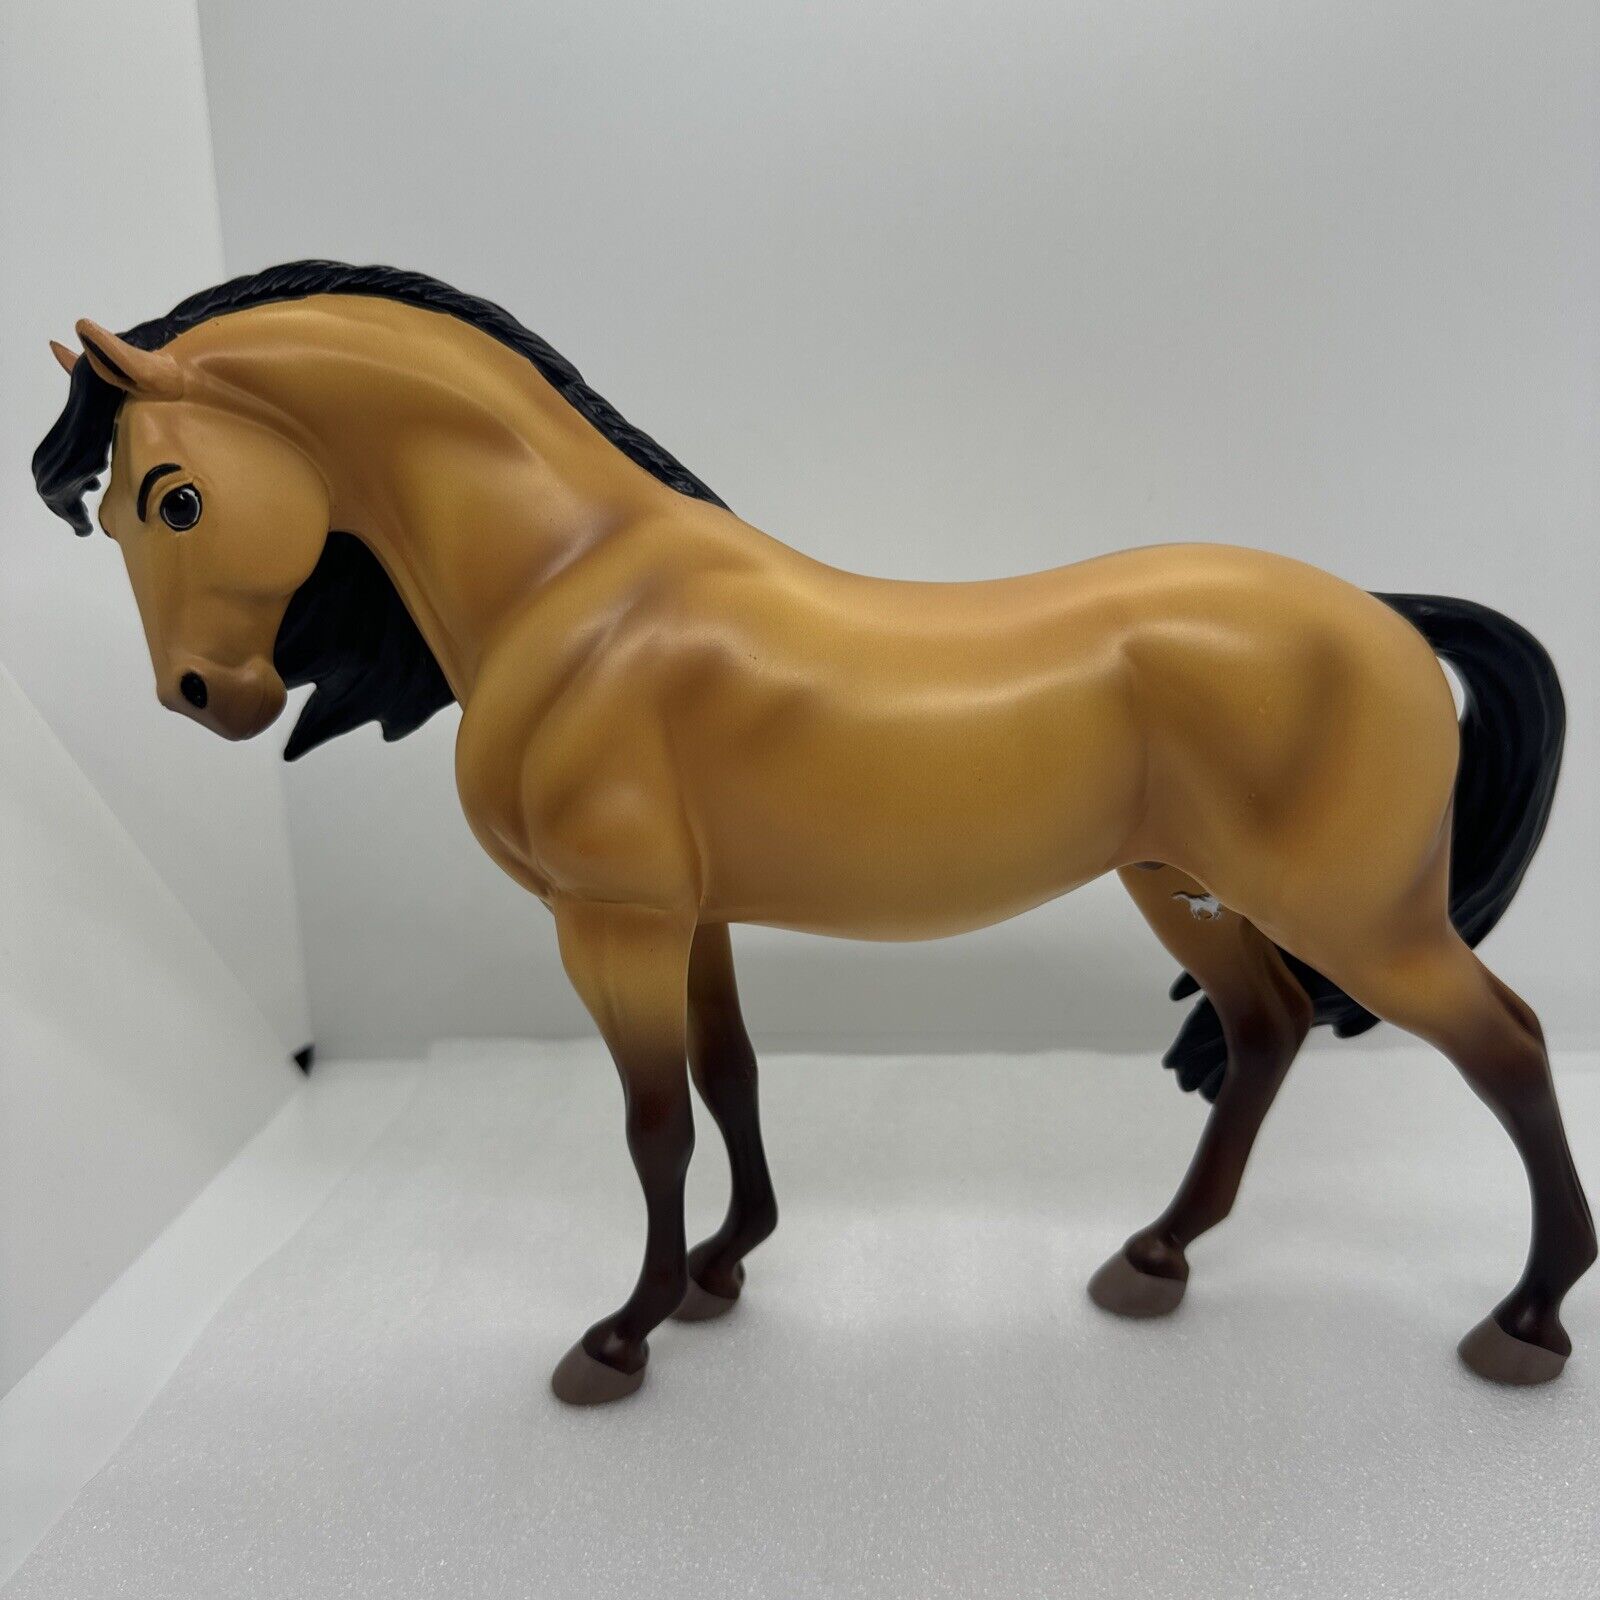 Vintage 2002 Breyer SPIRIT Stallion Of The Cimarron Horse Figure Reeves Movie